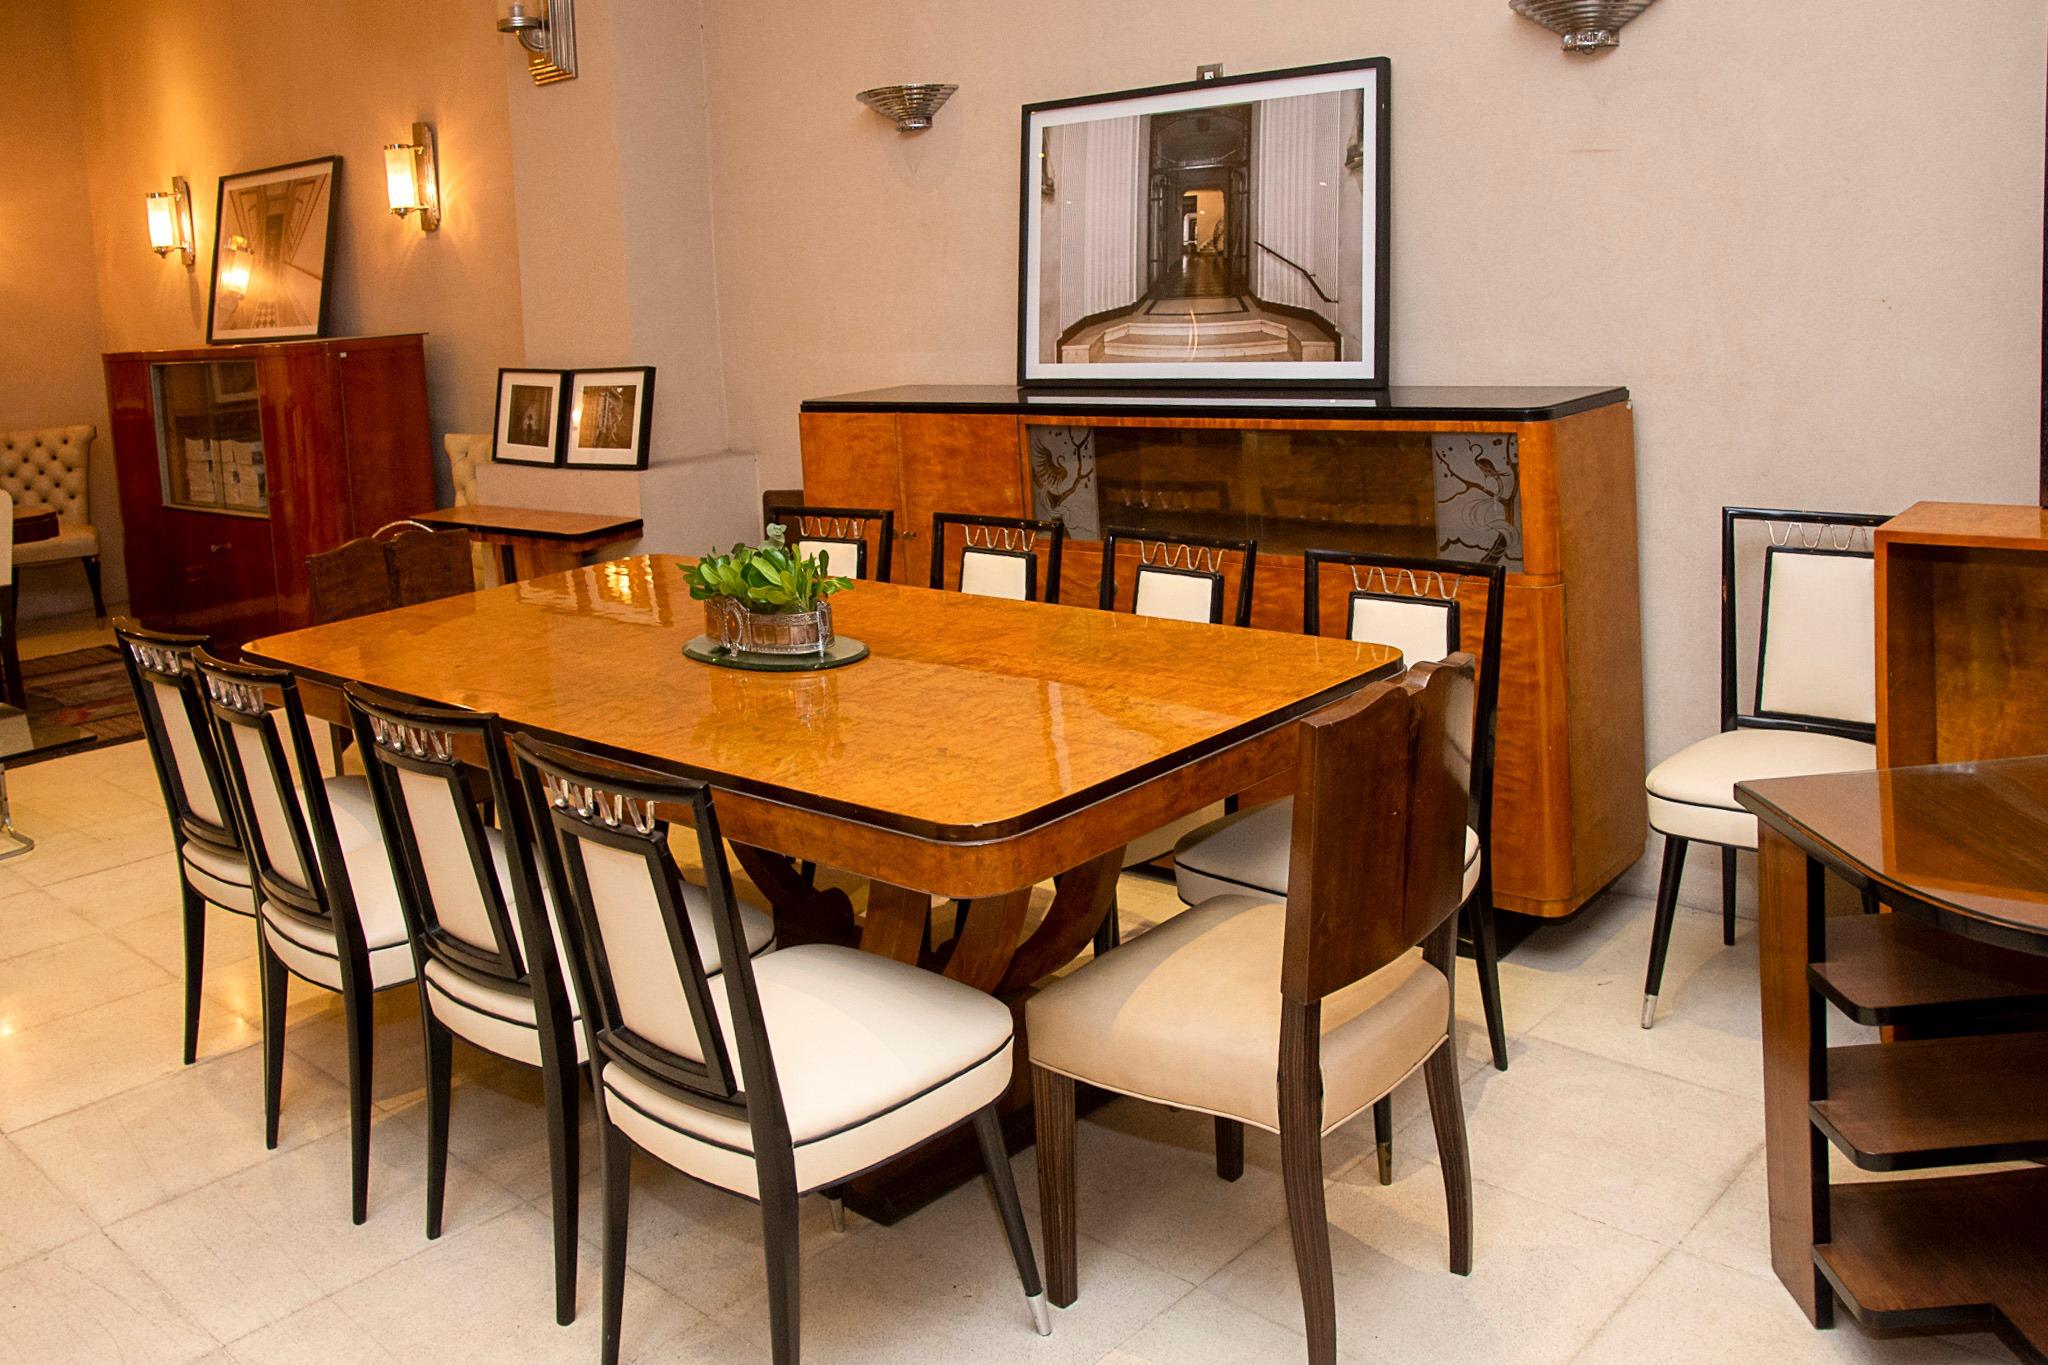 Holztisch mit verchromten Bronzebeschlägen
Stil: 60°
Italienisch
MATERIALIEN: Holz, Leder und Chrombronze
Oberfläche: Polyurethan-Lack
Seit 1982 haben wir uns auf den Verkauf von Art Deco, Jugendstil und Vintage spezialisiert. Wenn Sie Fragen haben,